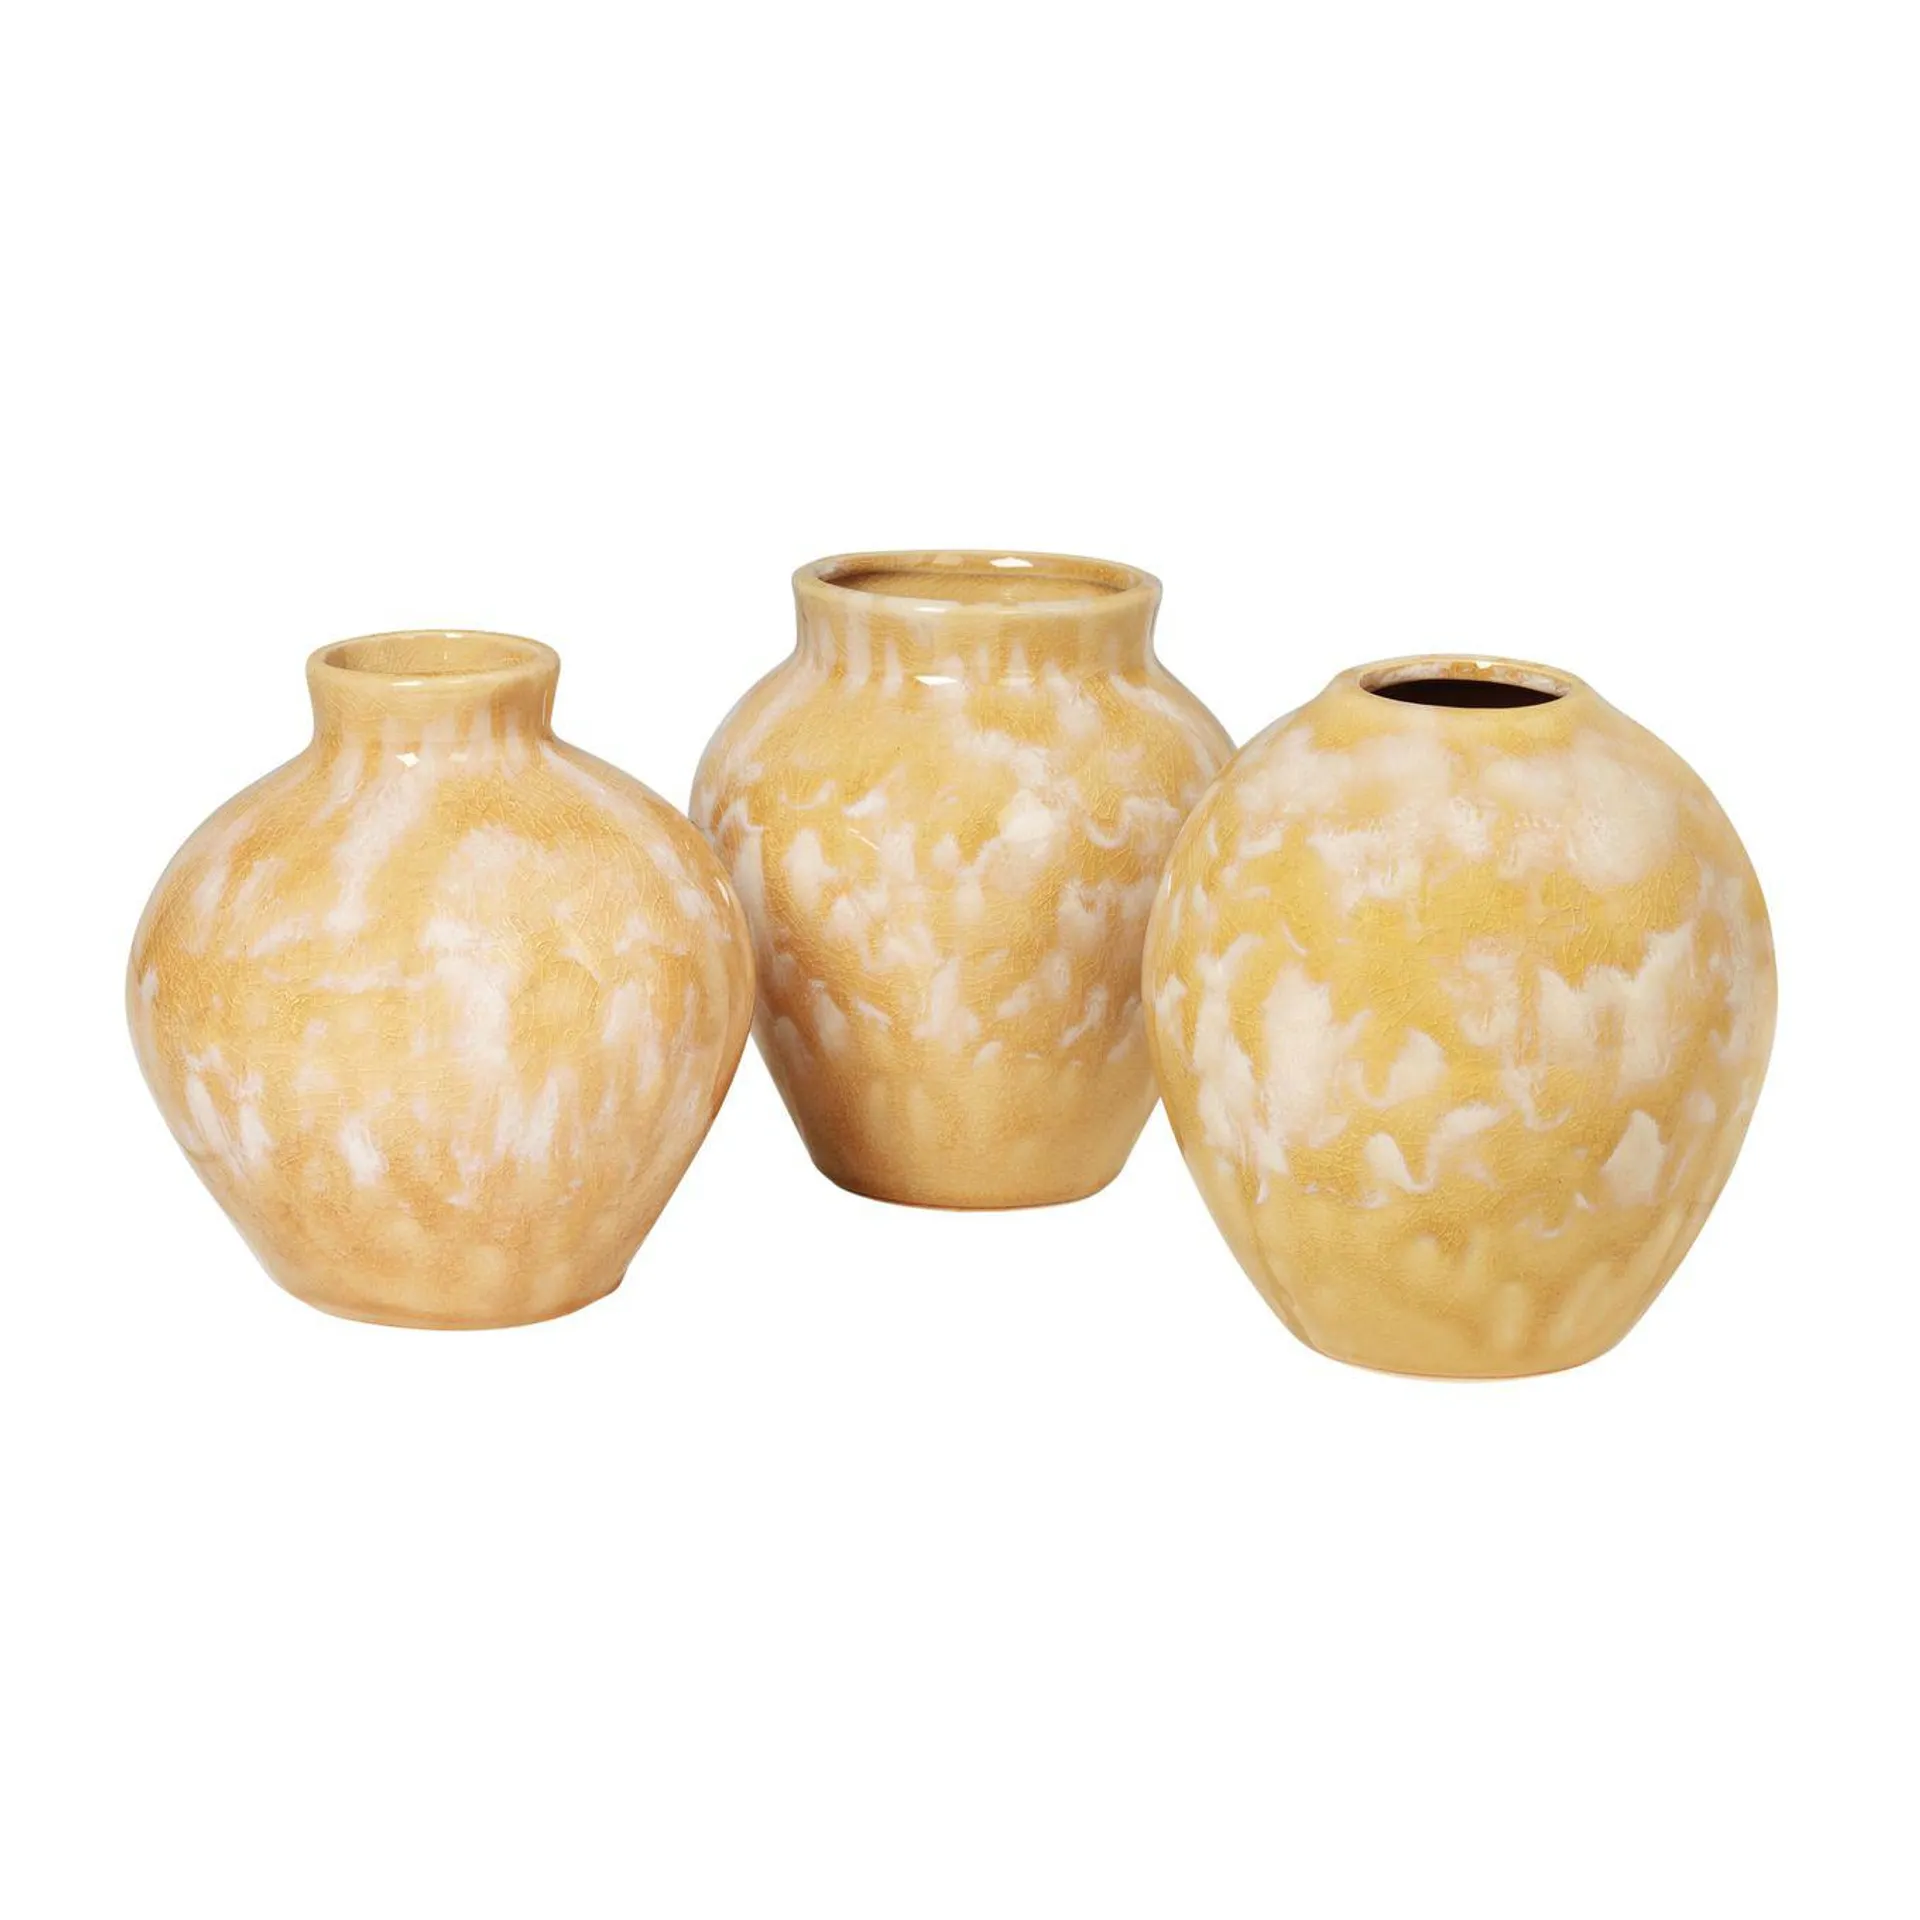 Ingrid ceramic vase 14.5 cm 3-pack